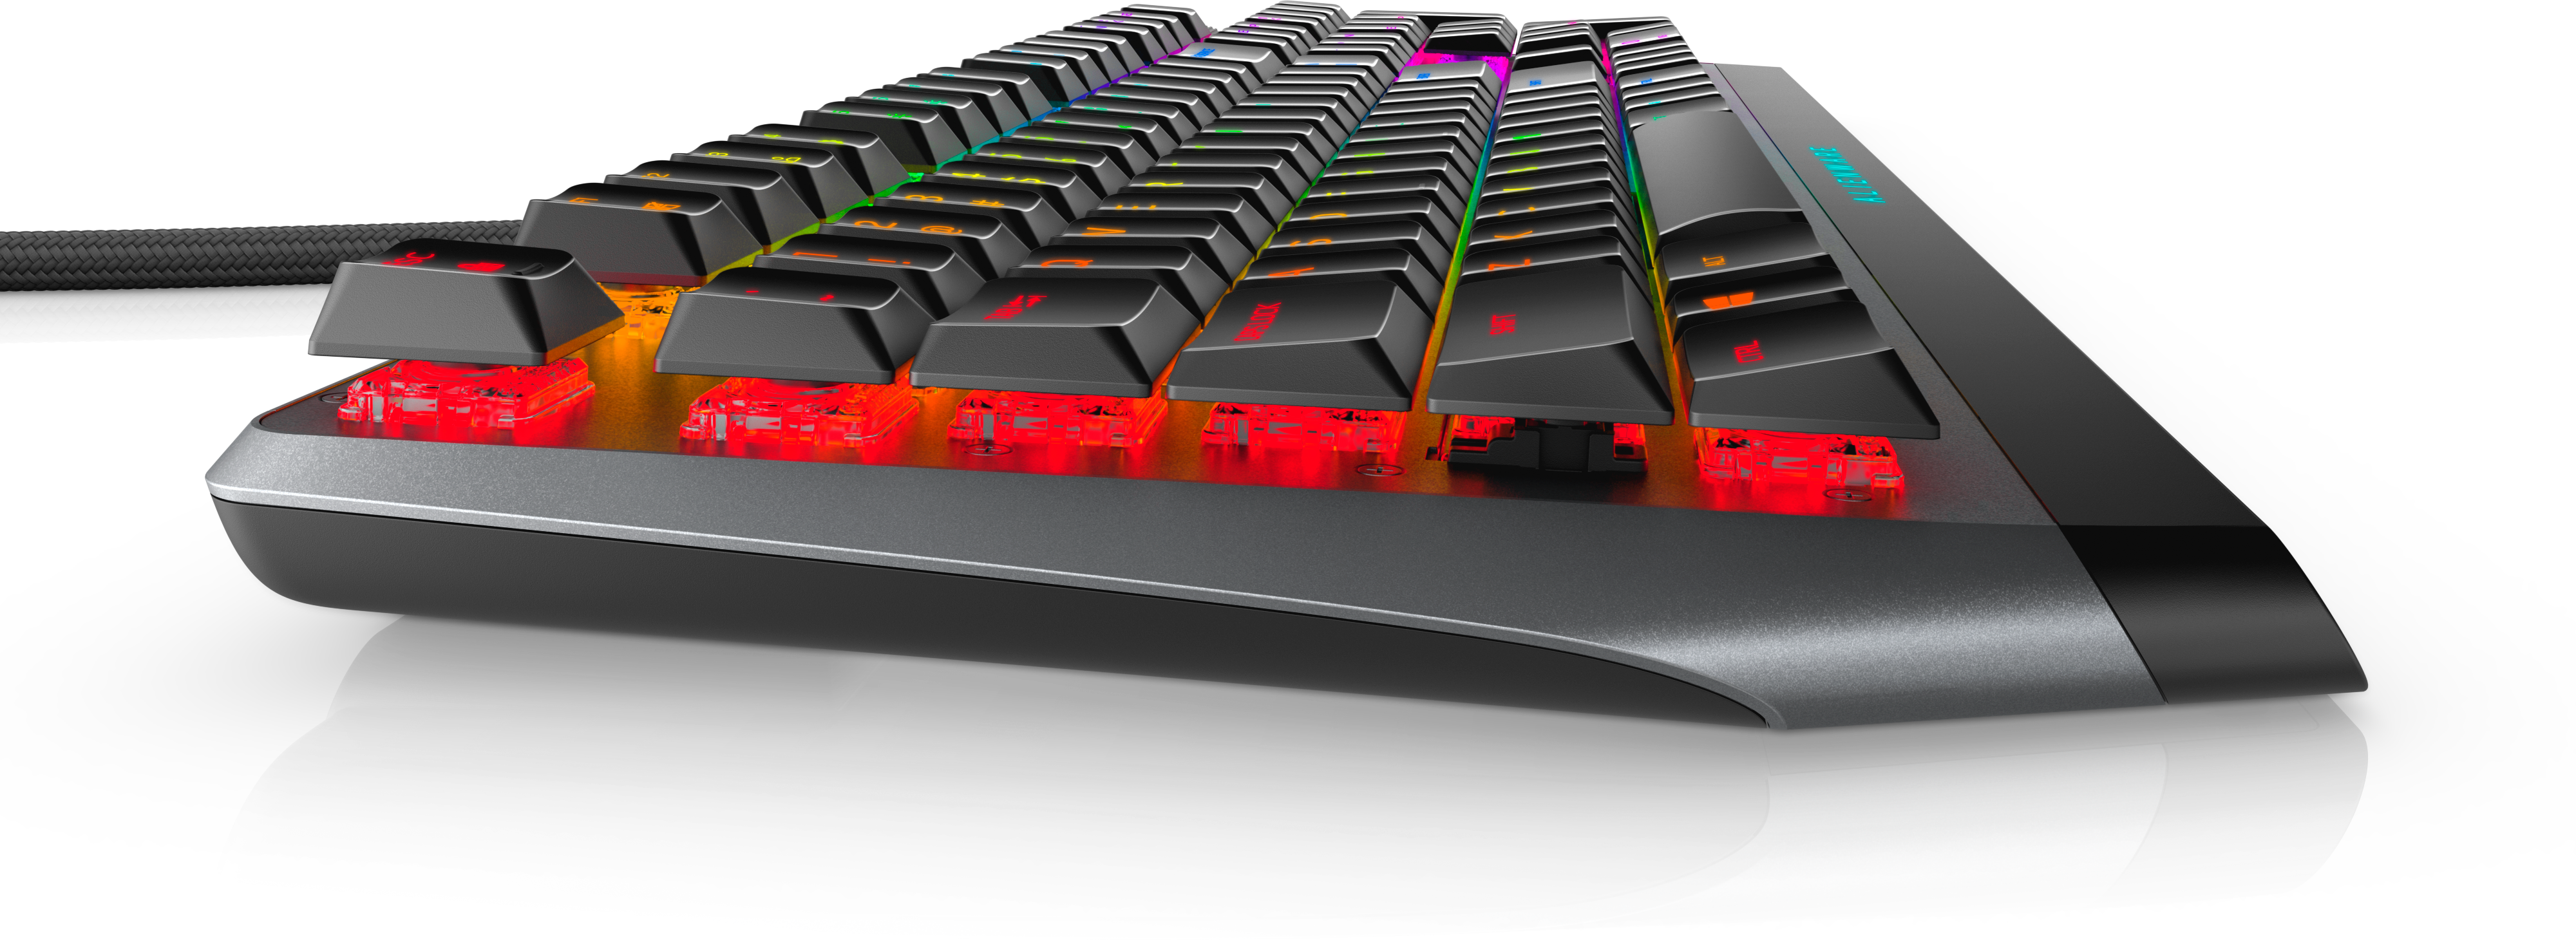 alienware keyboard